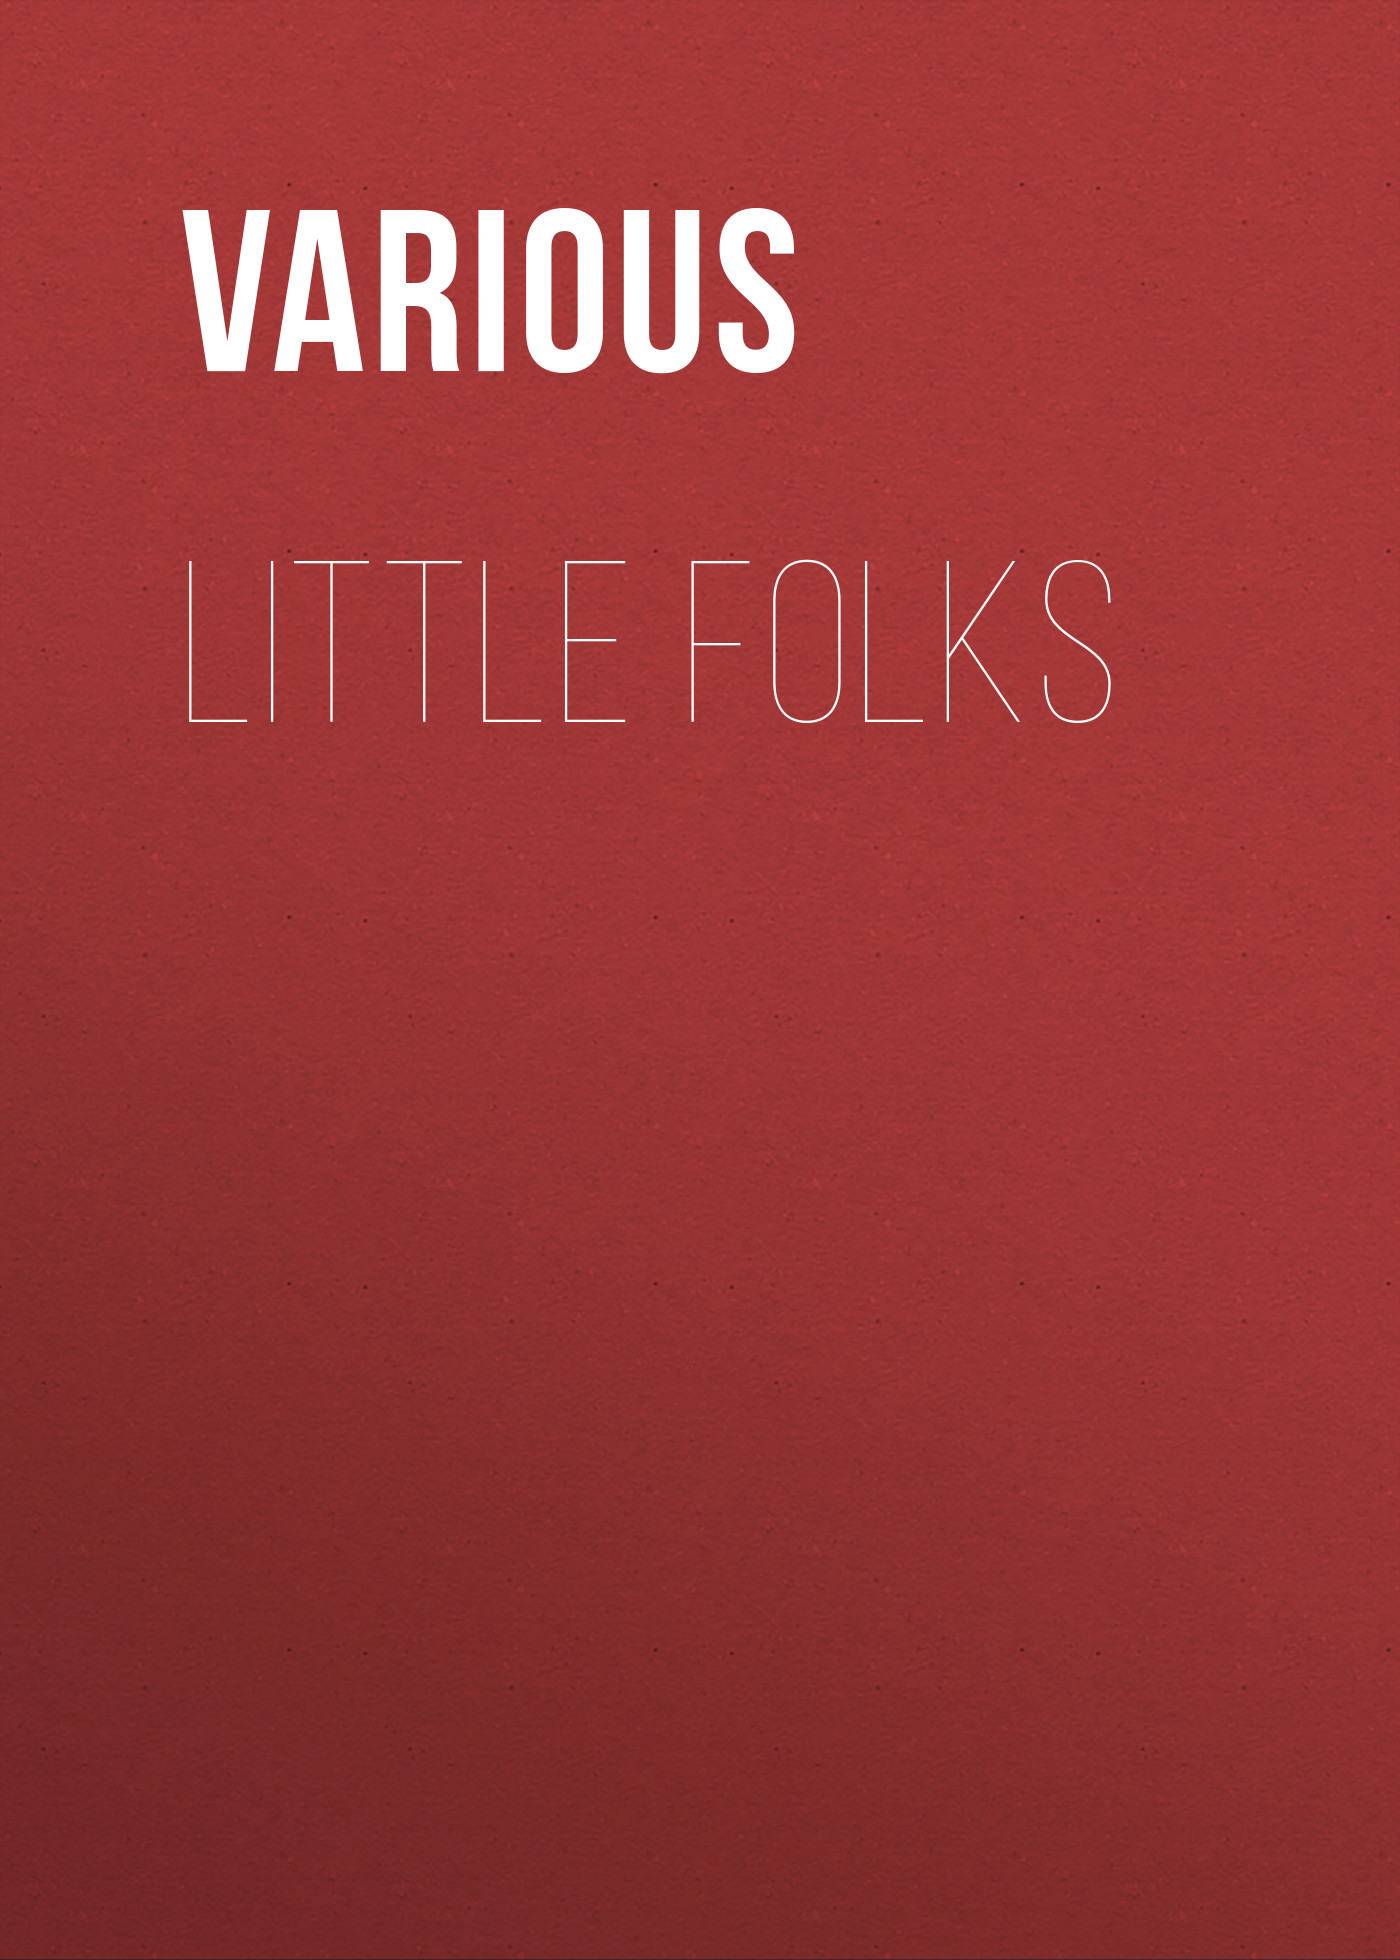 Книга Little Folks из серии , созданная  Various, может относится к жанру Зарубежные детские книги, Журналы, Зарубежная старинная литература, Зарубежная классика. Стоимость электронной книги Little Folks с идентификатором 35495471 составляет 0 руб.